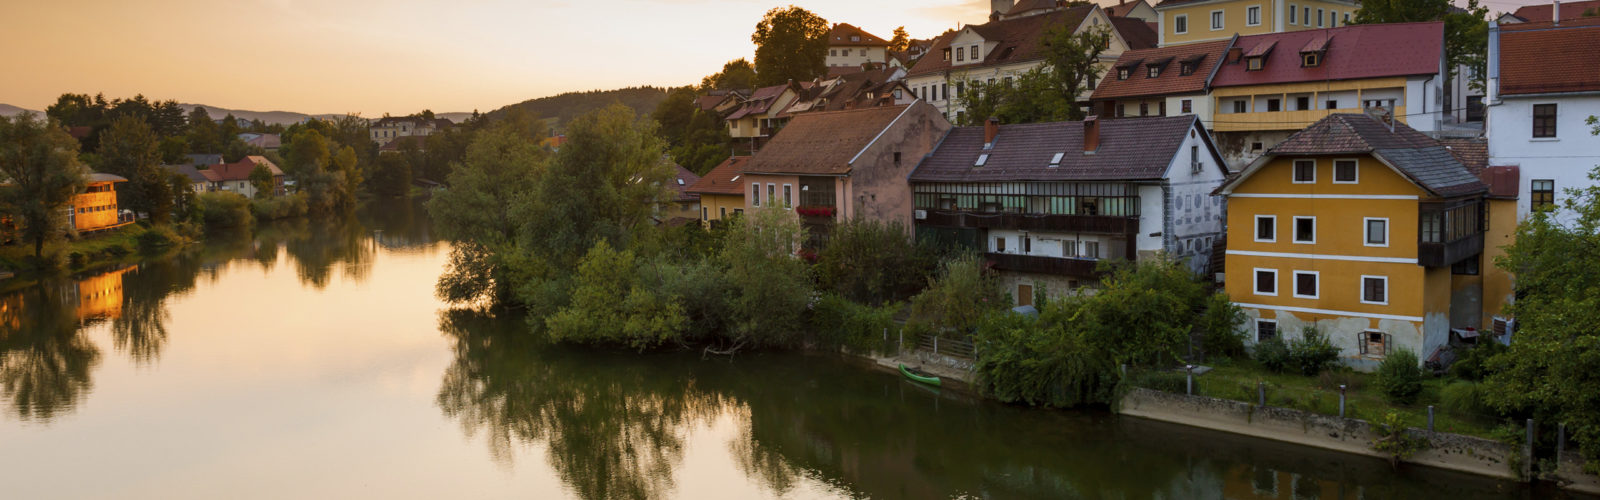 river-krka-slovenia